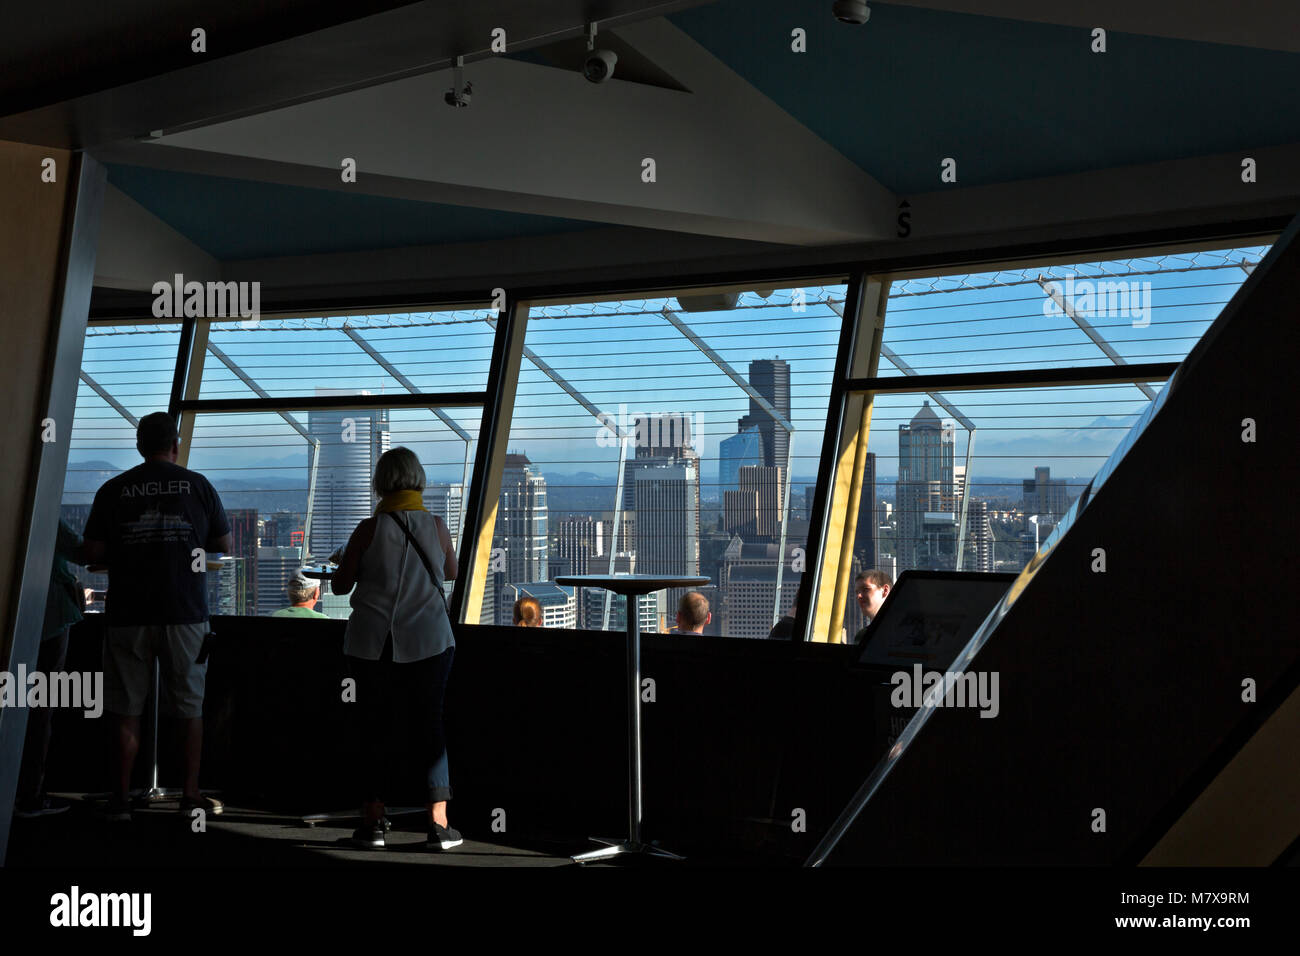 WA13799-00...WASHINGTON - i visitatori potranno ammirare il centro di Seattle dall'interno della piattaforma di osservazione dello Space Needle. 2017 Foto Stock